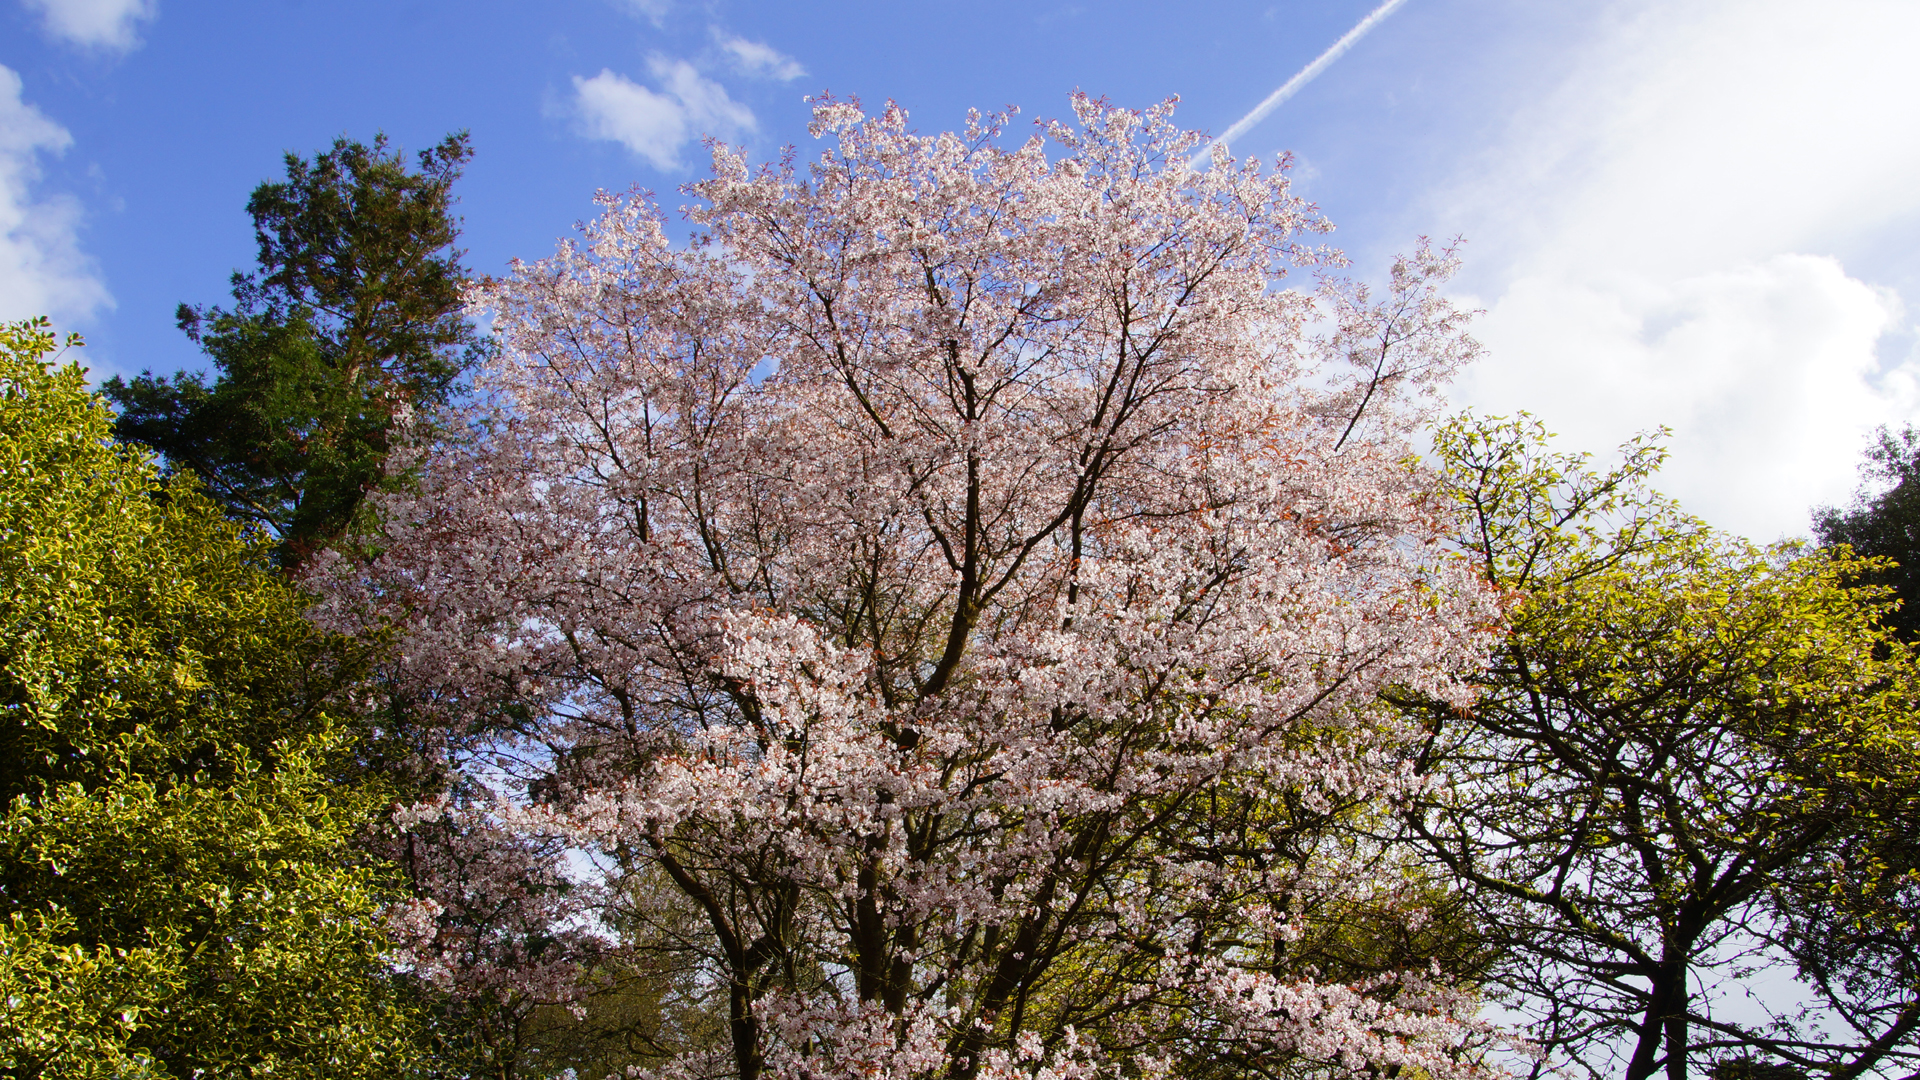 Fotostrecke Frühling Abbildung 22: Frühling in den Mount Stewarts Gardens, Nordirland